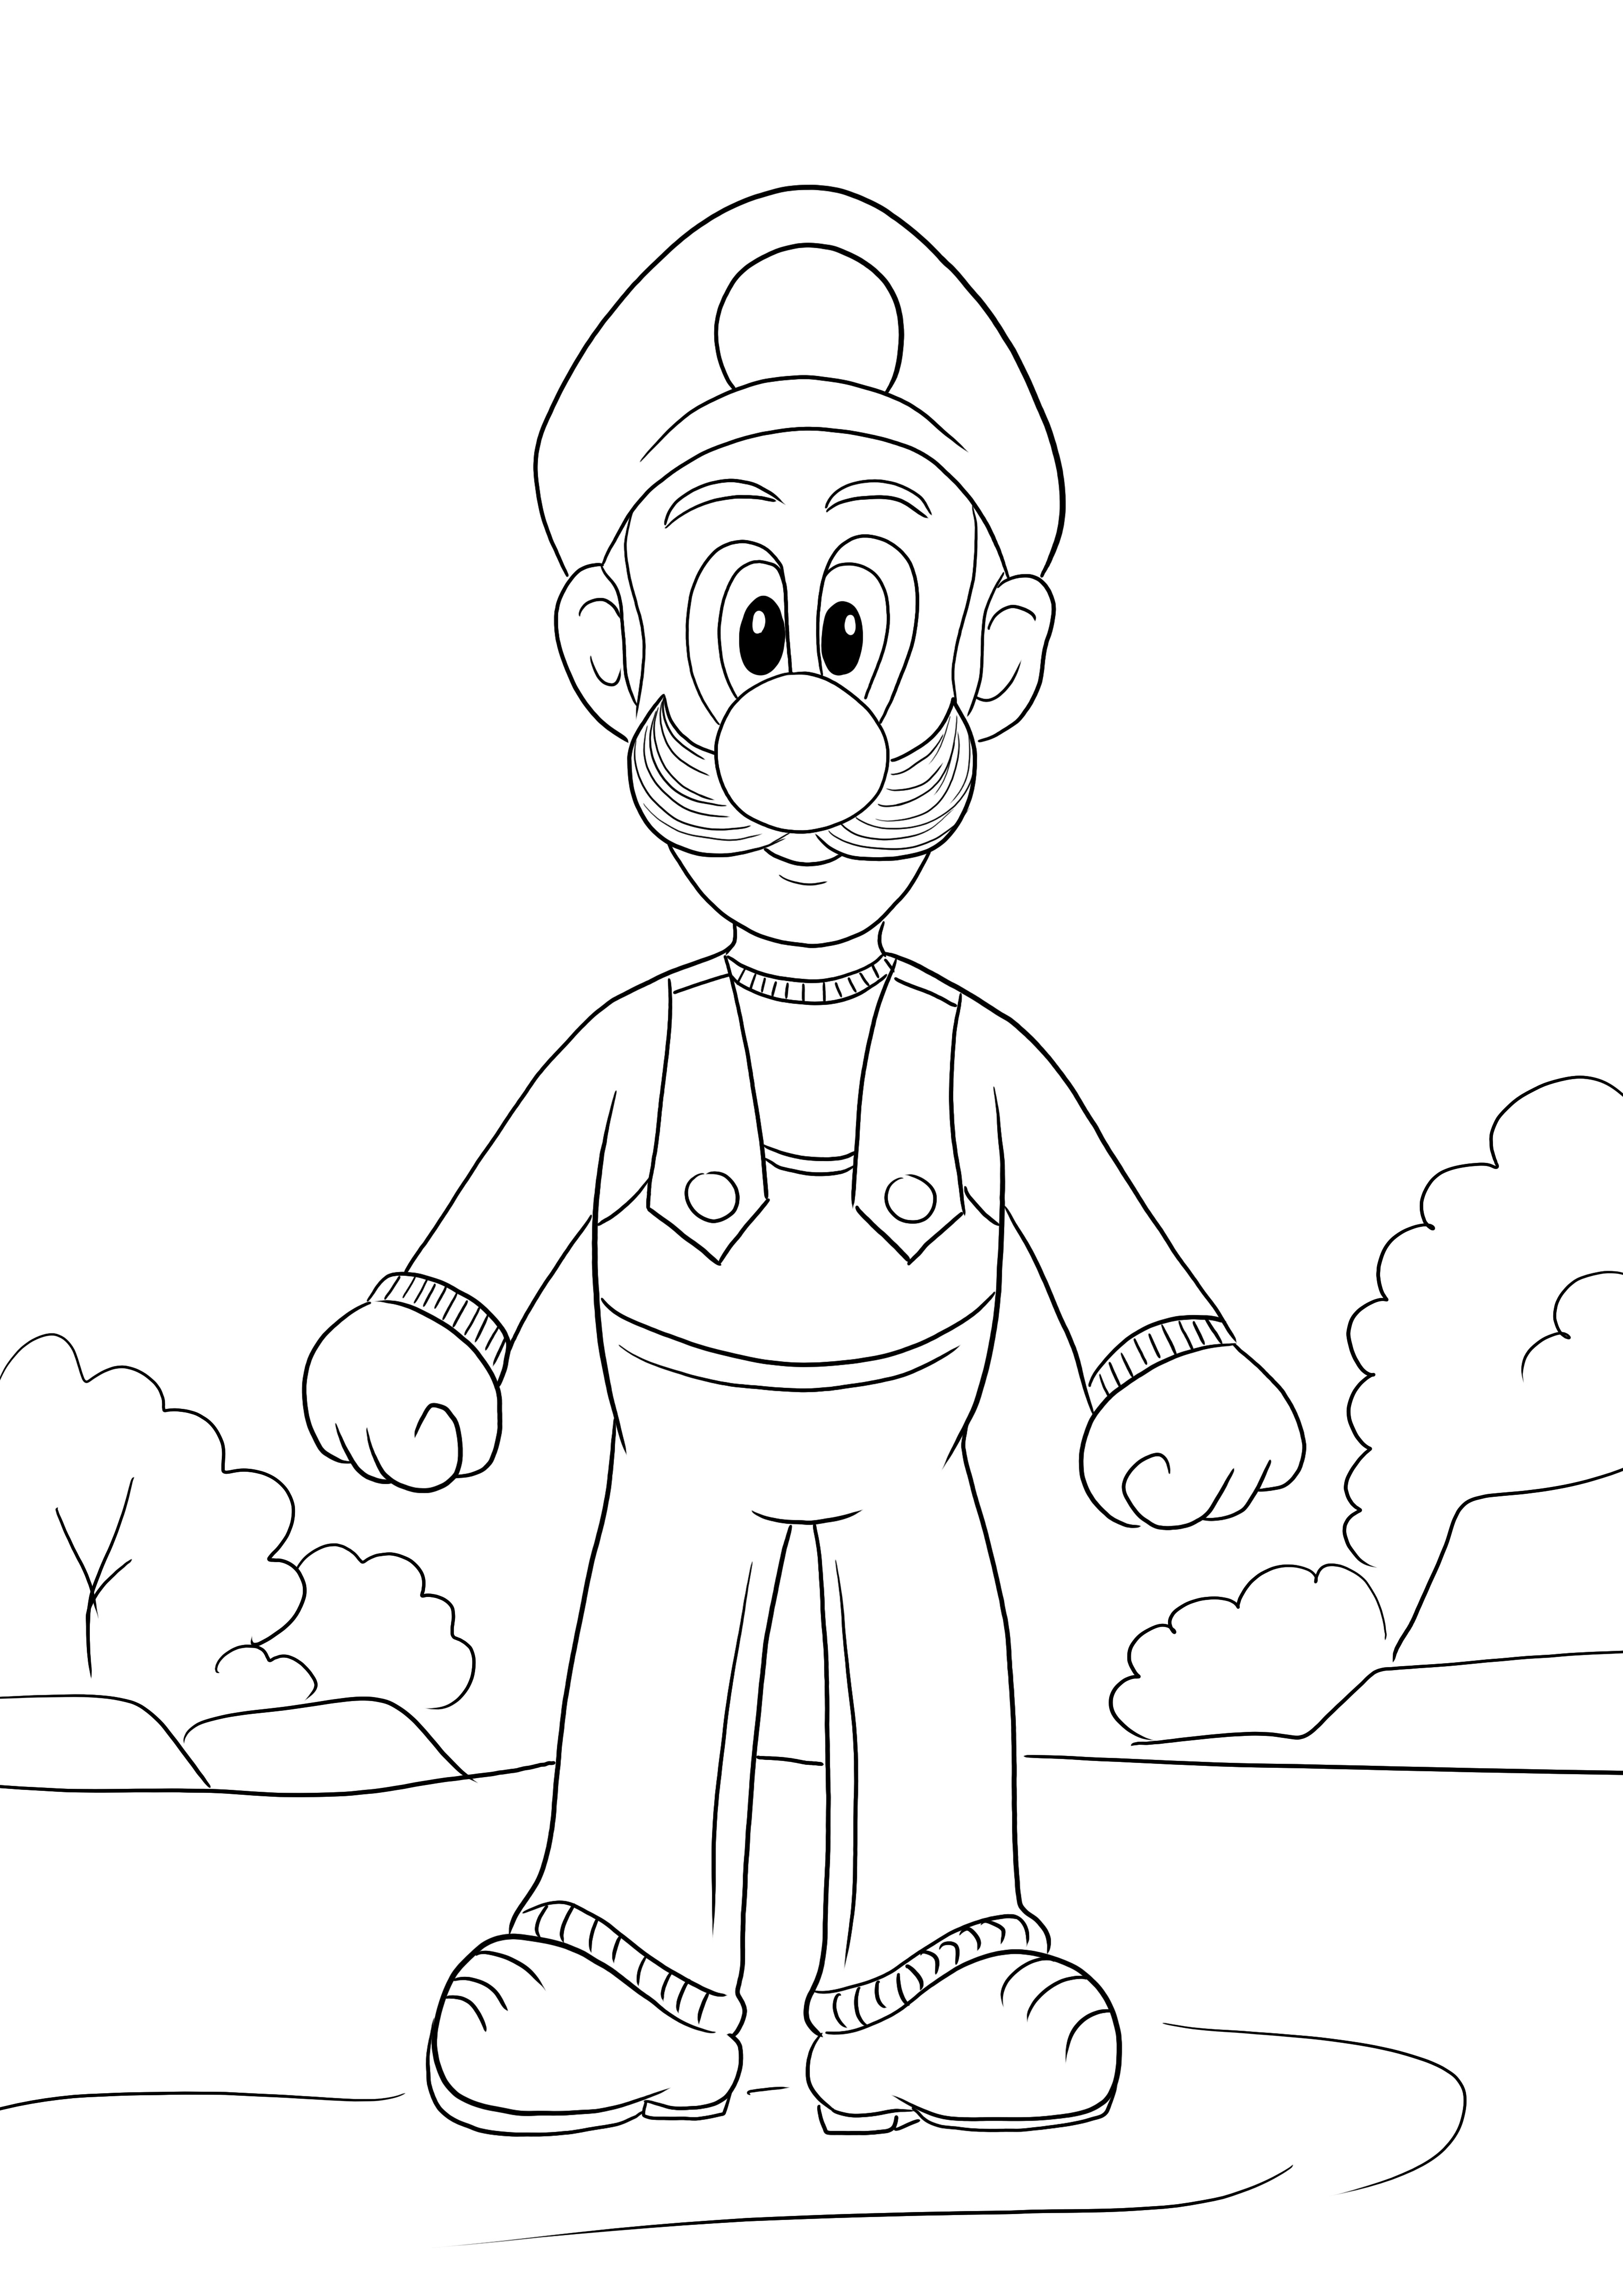 Hier is een gratis kleurafbeelding van Luigi uit het Super Mario-spel om te downloaden of gratis af te drukken kleurplaat